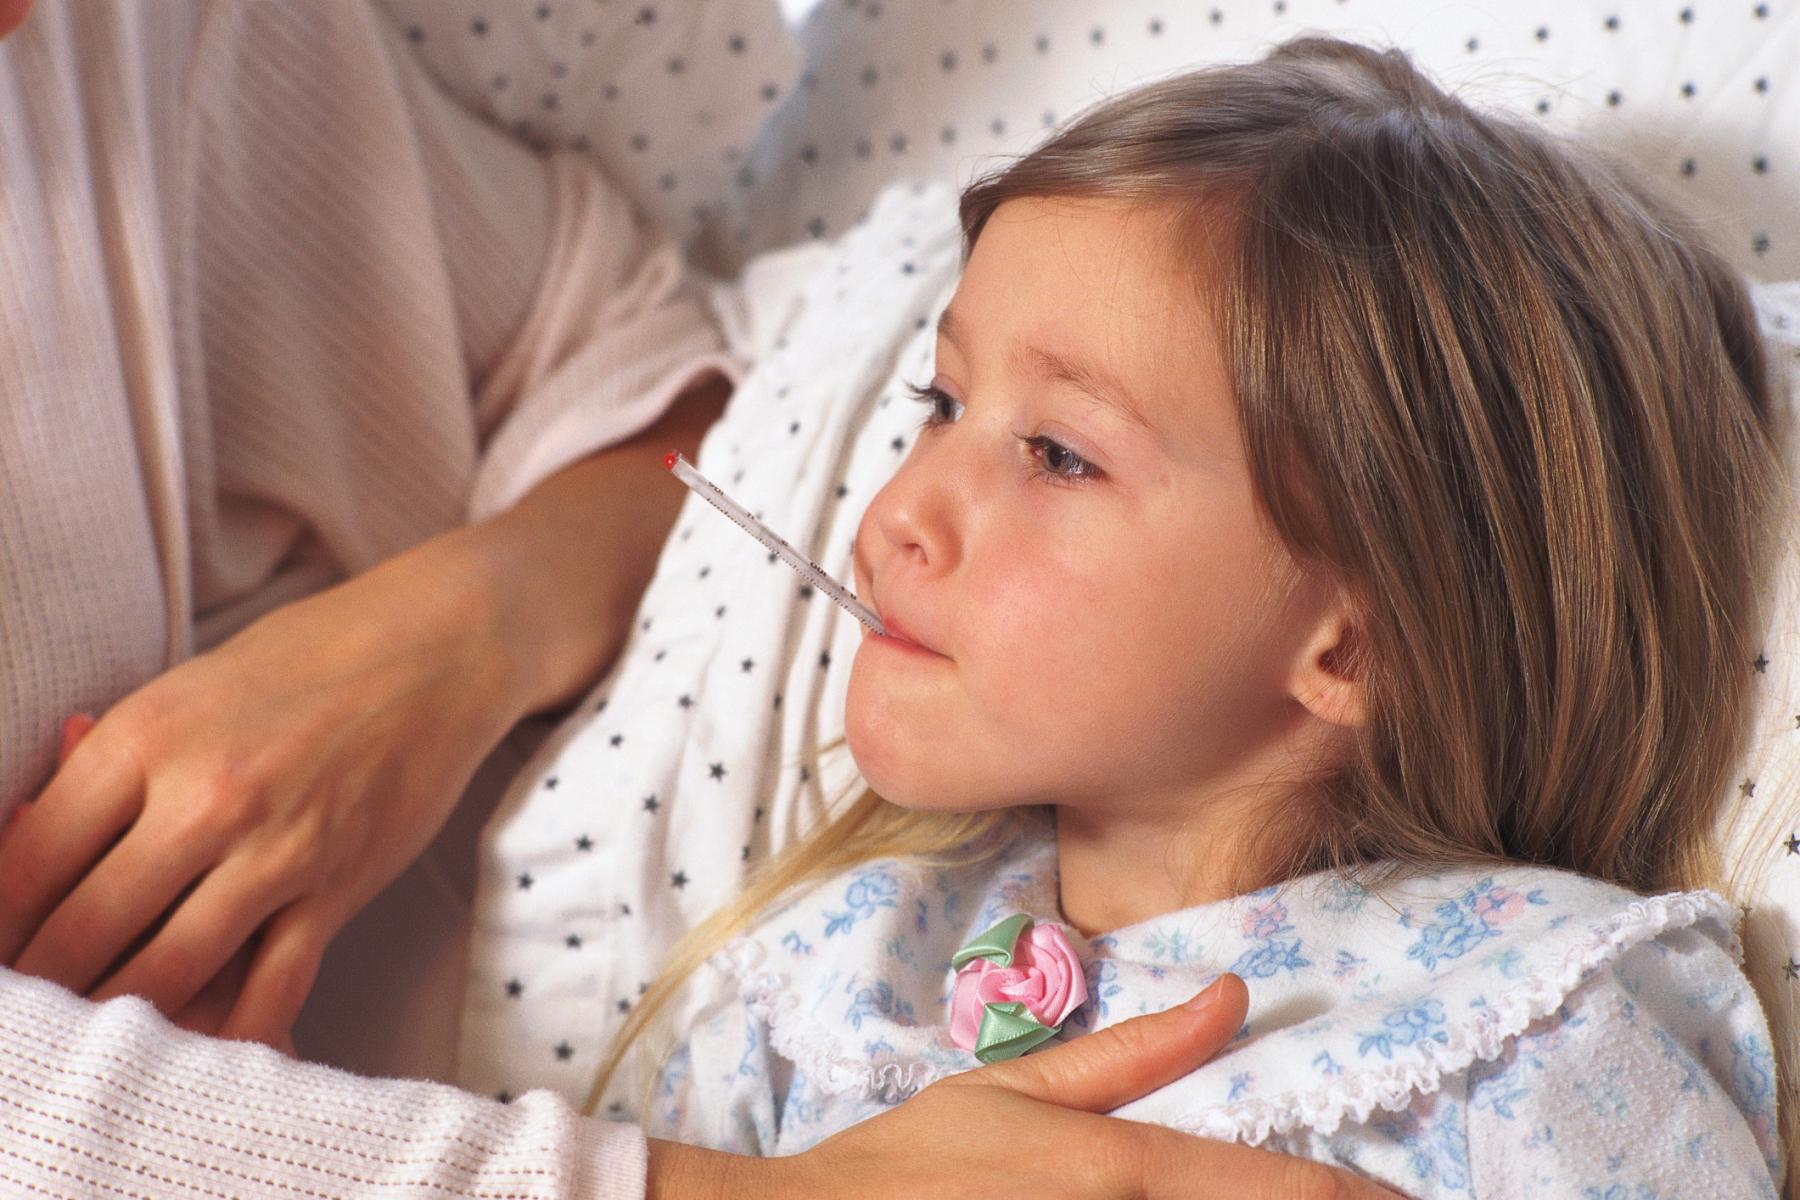 Salud emite alerta sanitaria por pico de virus respiratorio en Hospital de Niños